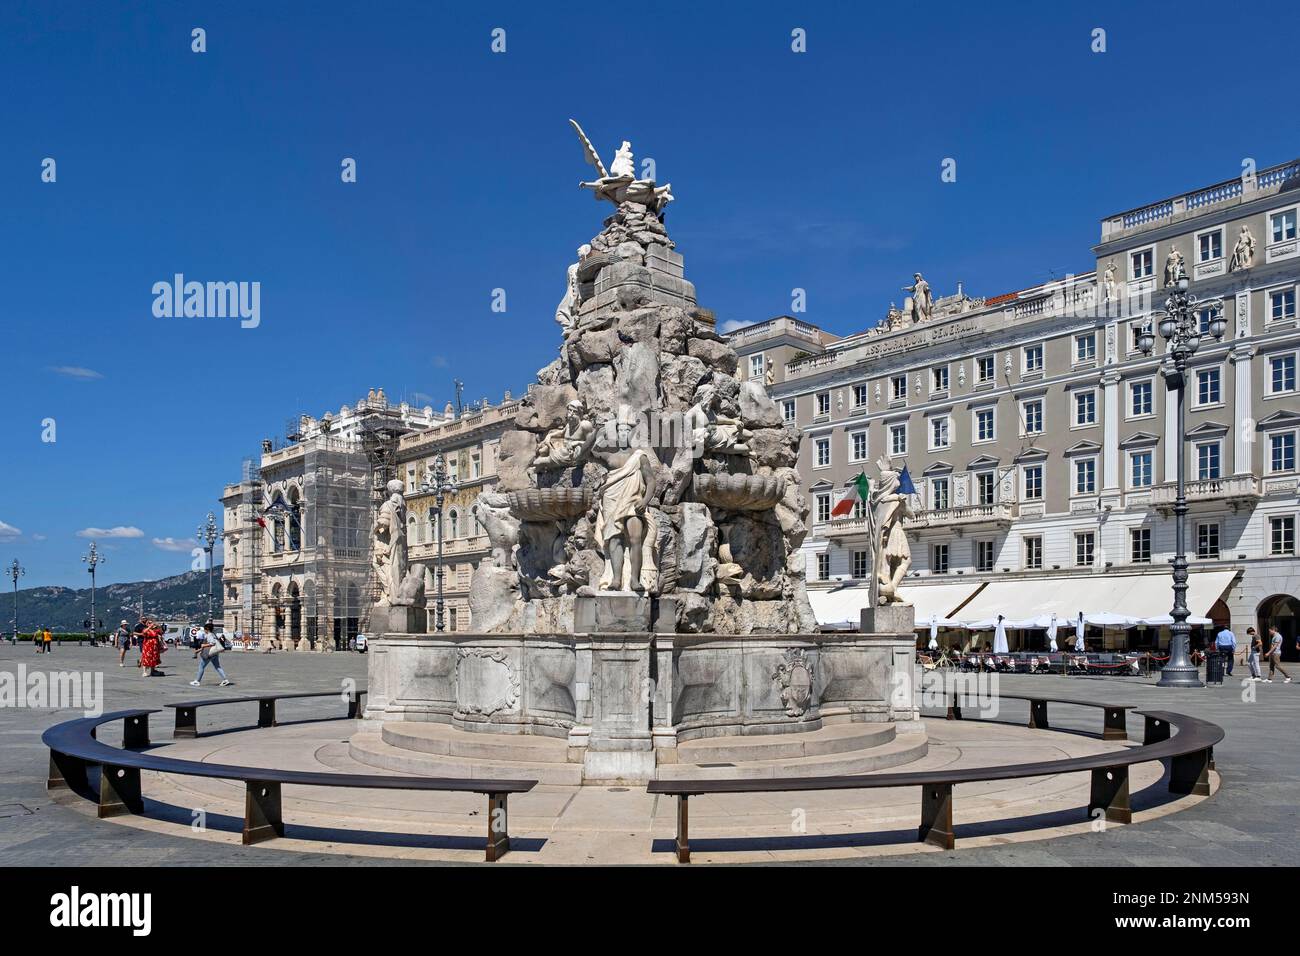 Fountain of Four Continents on the Piazza Unità d'Italia / Unity of Italy Square in the city centre of Trieste, Friuli Venezia Giulia, northern Italy Stock Photo